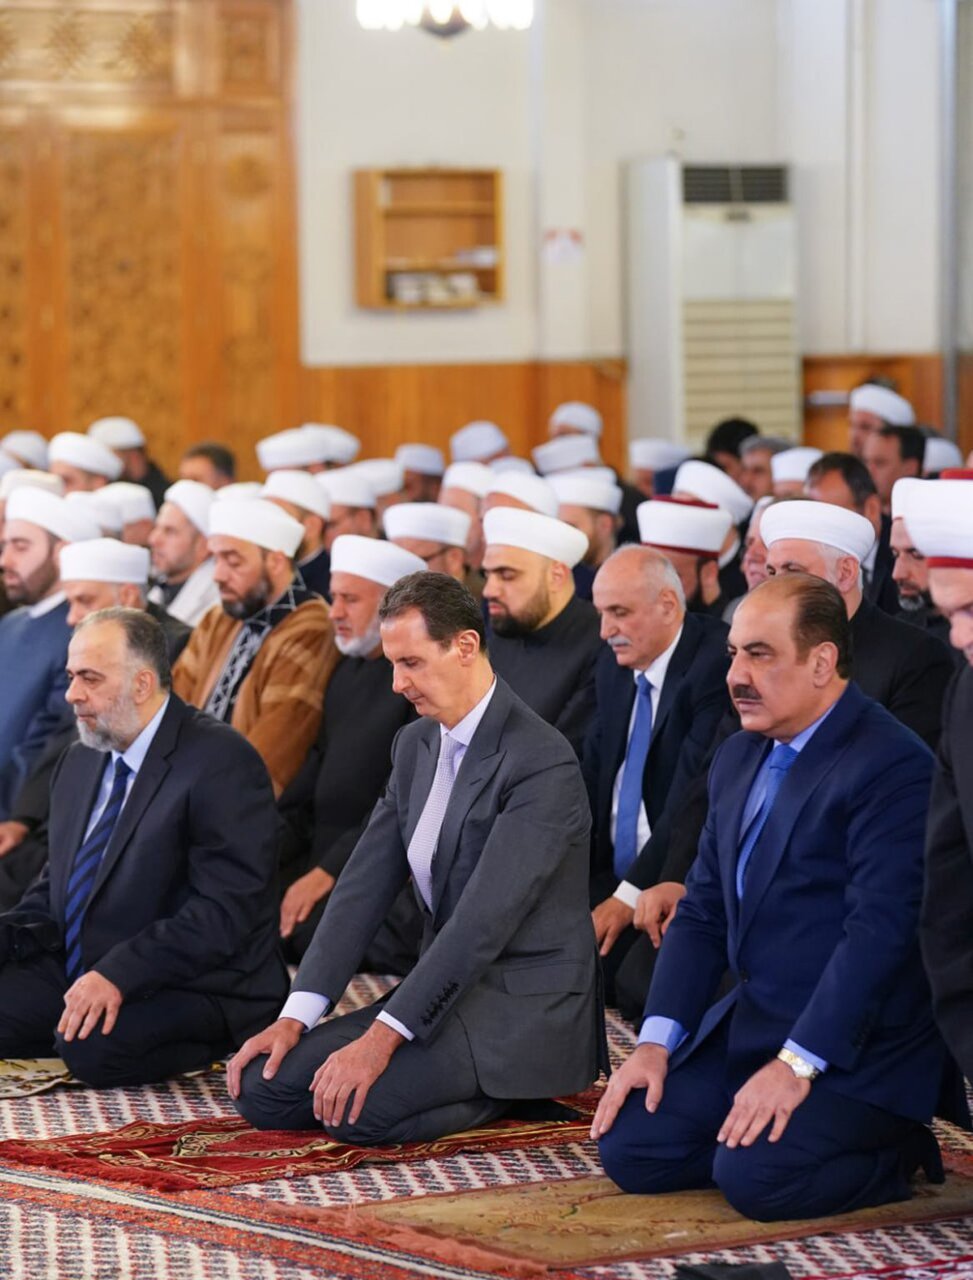 بشار اسد در نماز عید فطر